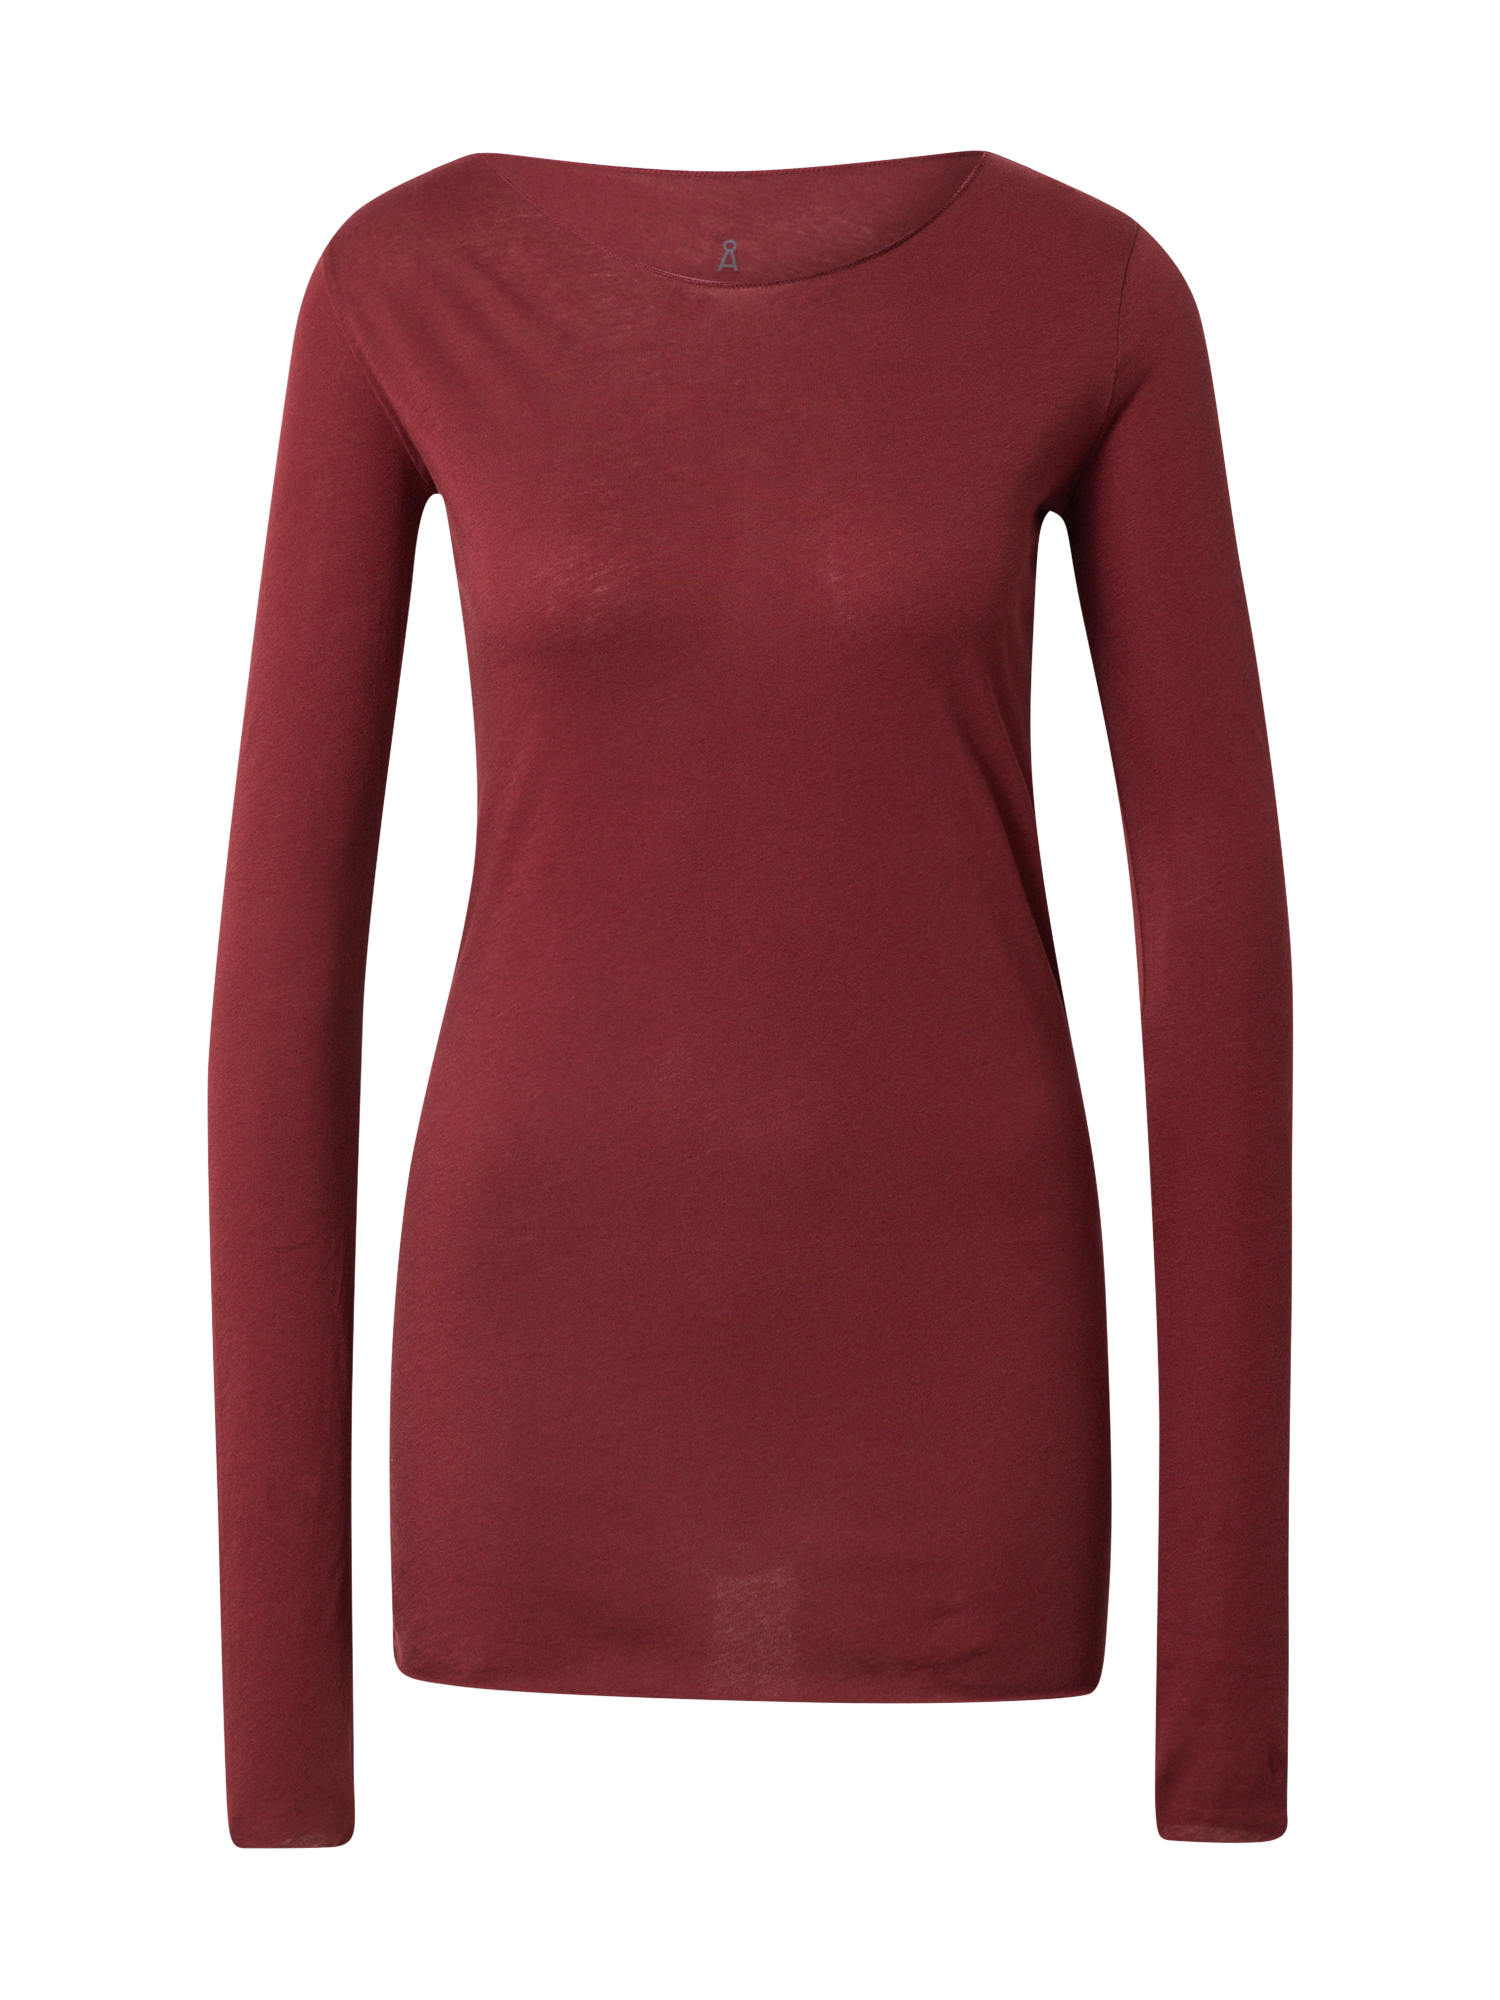 Odzież Koszulki & topy ARMEDANGELS Koszulka Evva w kolorze Rubinowo-Czerwonym 